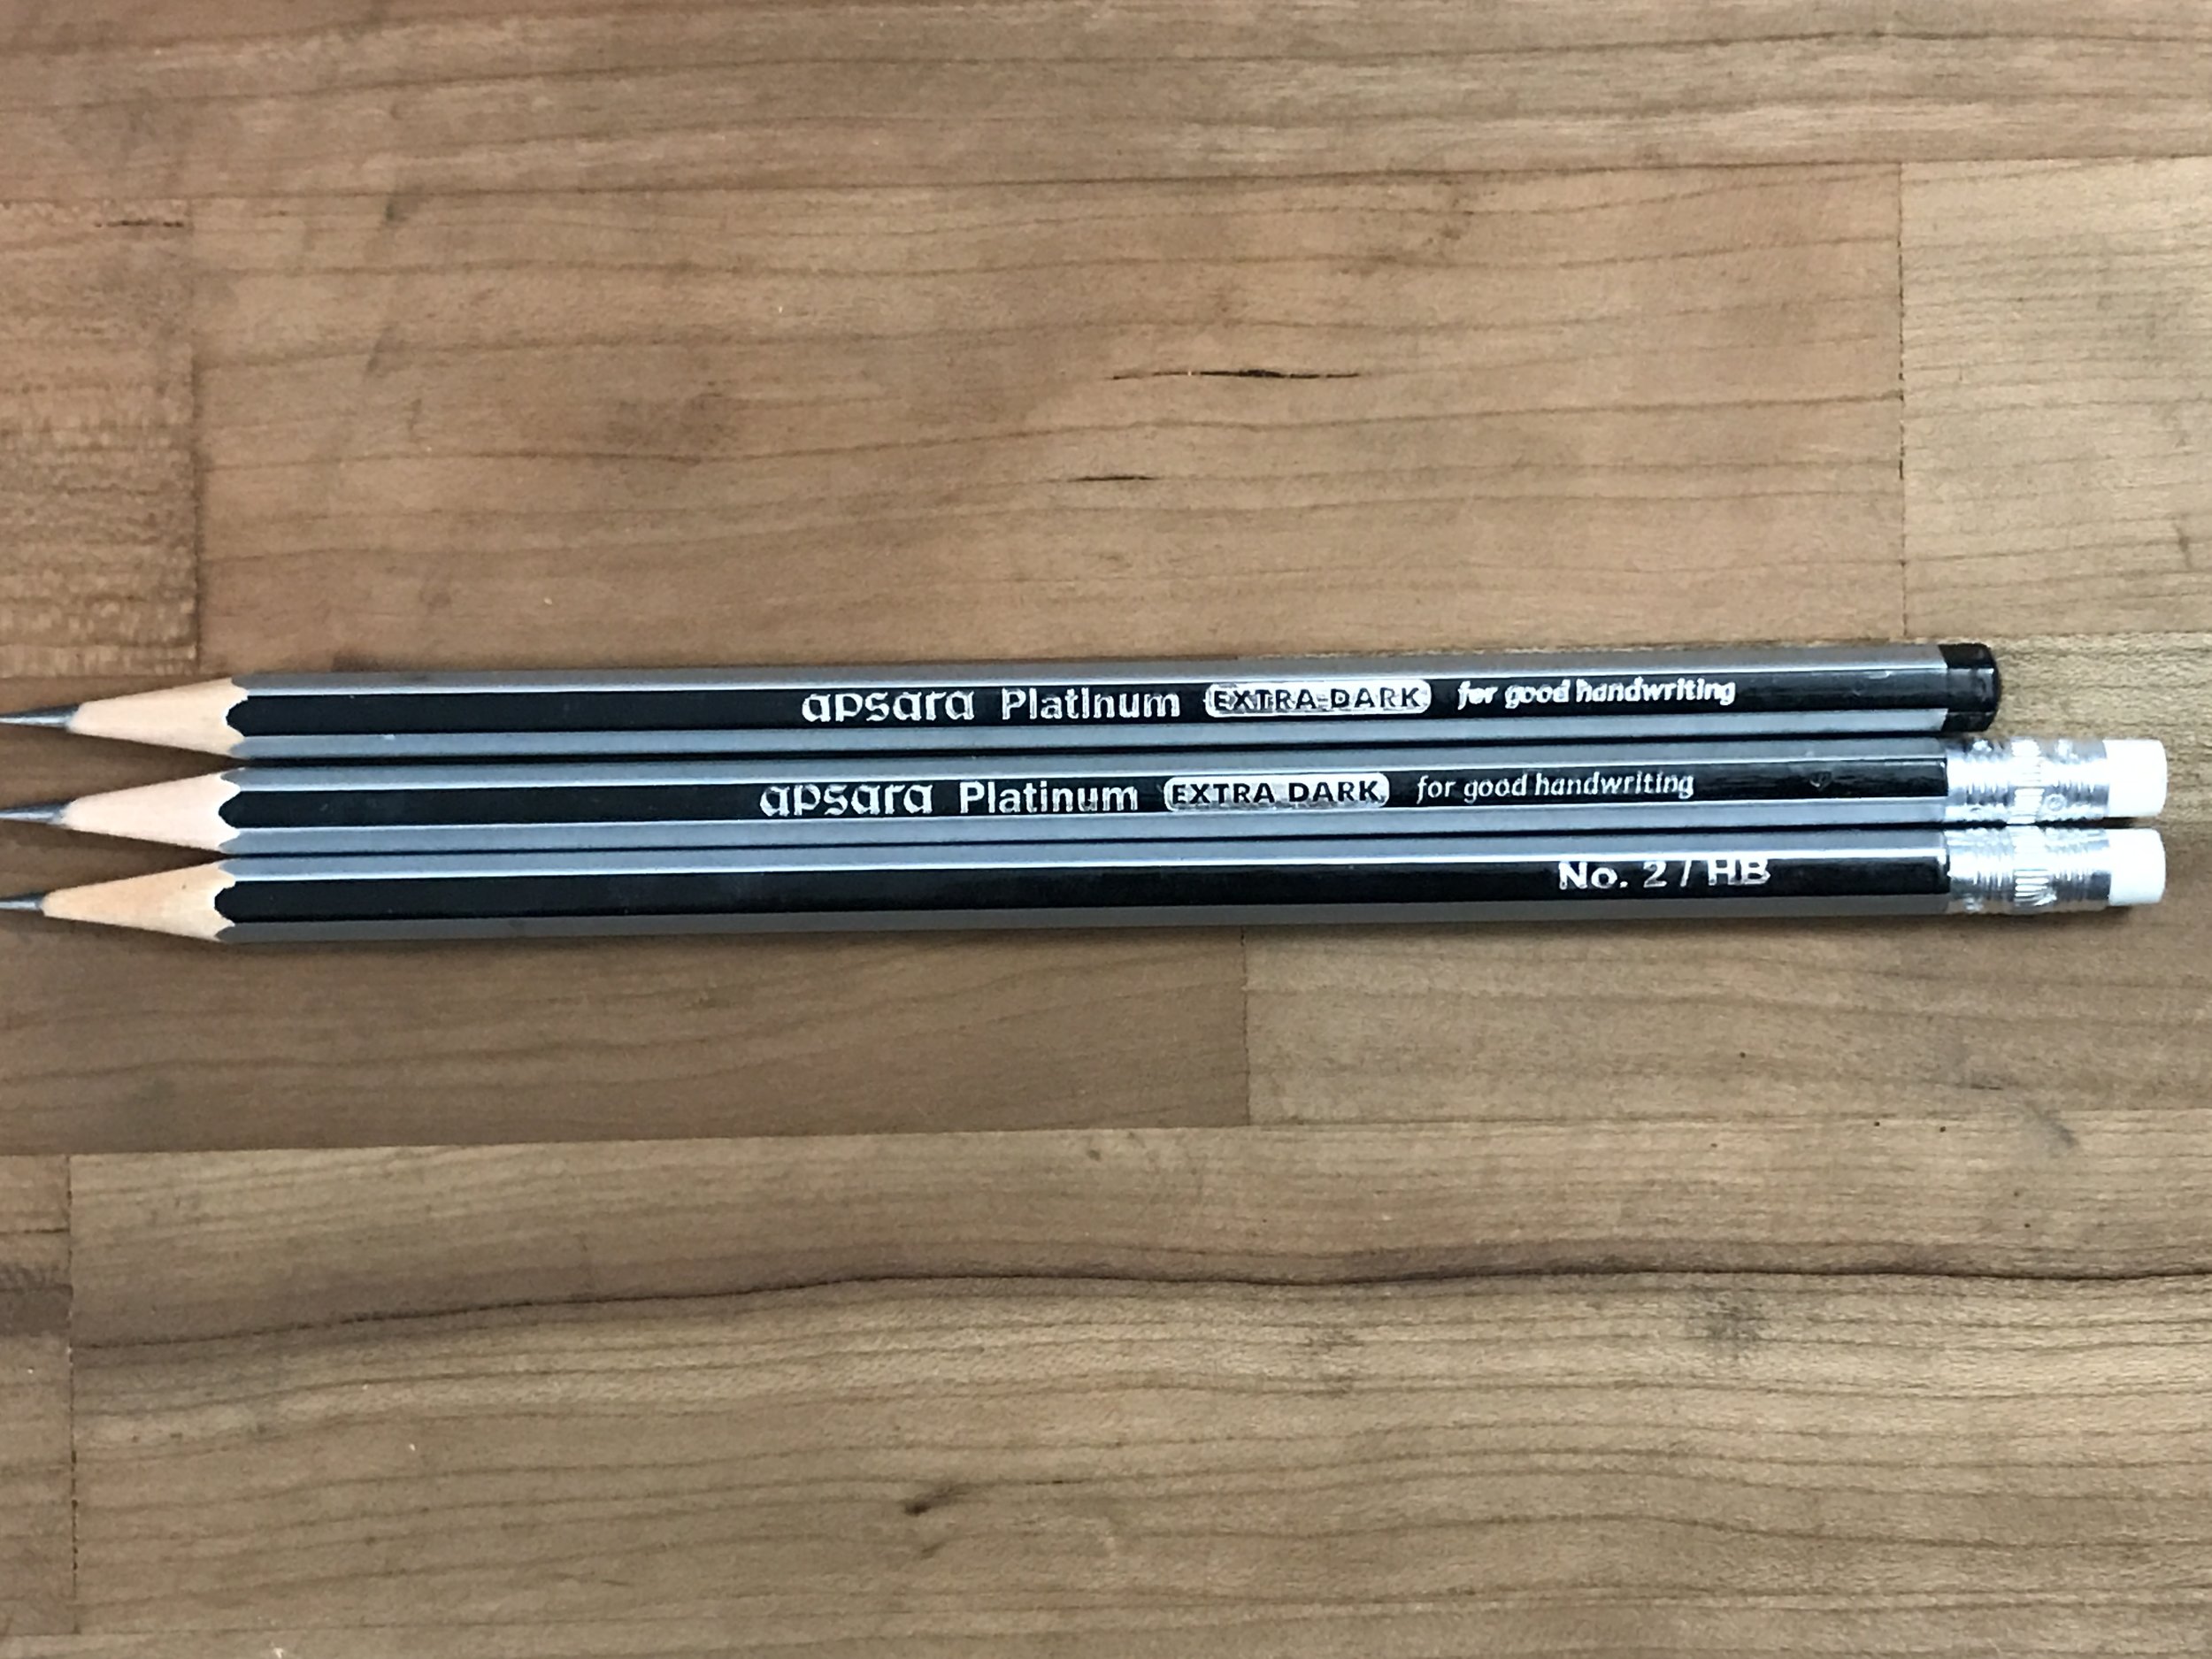 10 Pencils FREE 1 Eraser & Sharpener APSARA PLATINUM EXTRA SUPER DARK PENCILS 